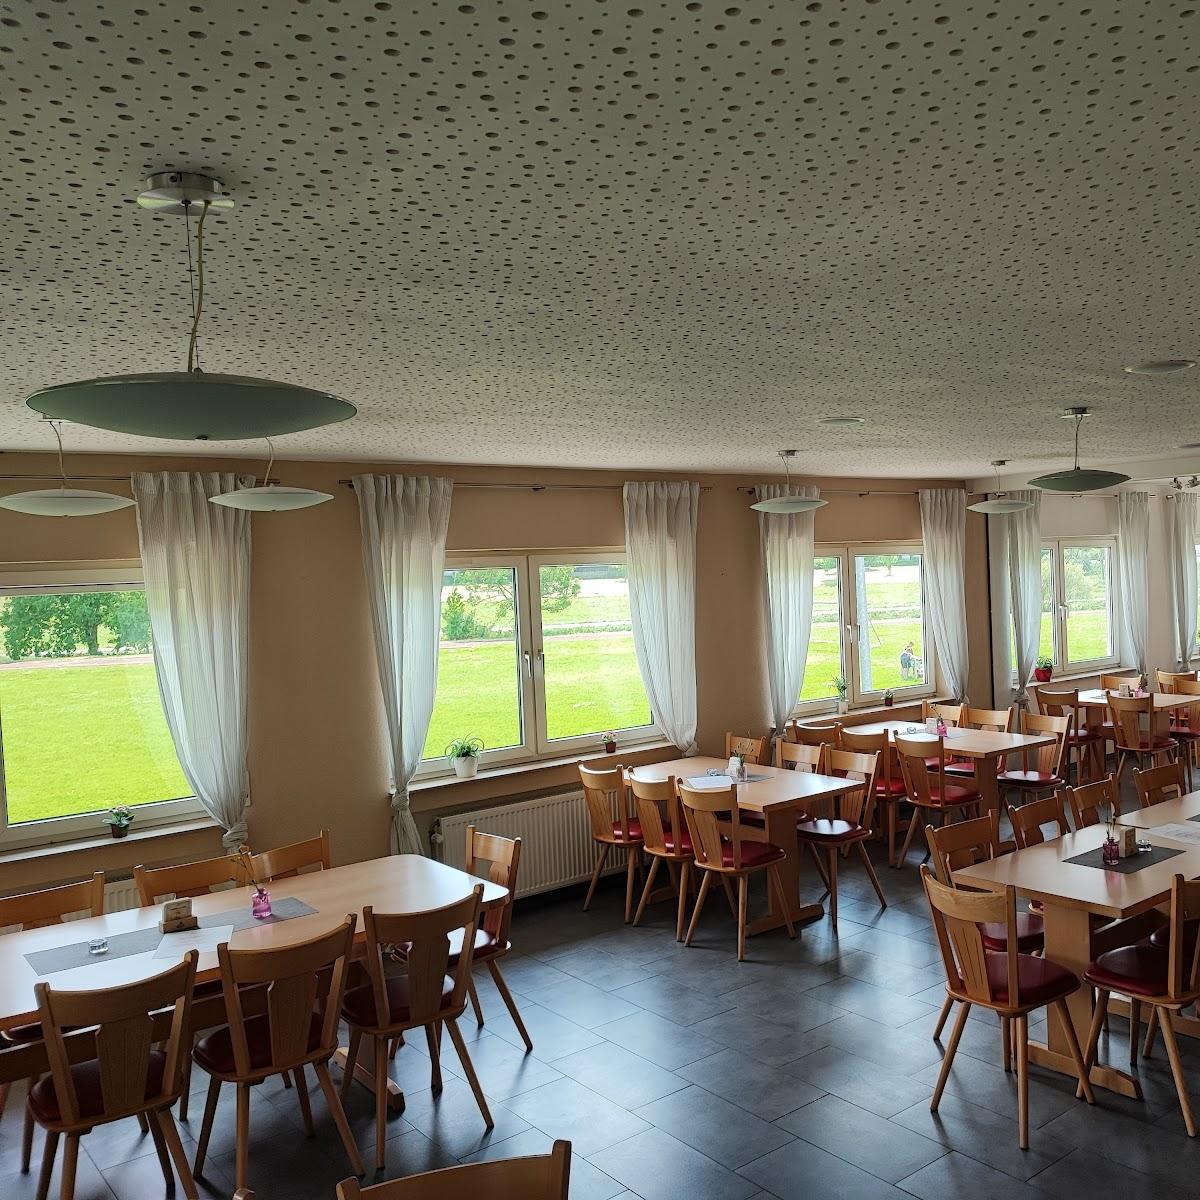 Restaurant "SVSO-Gaststätte" in Seitingen-Oberflacht